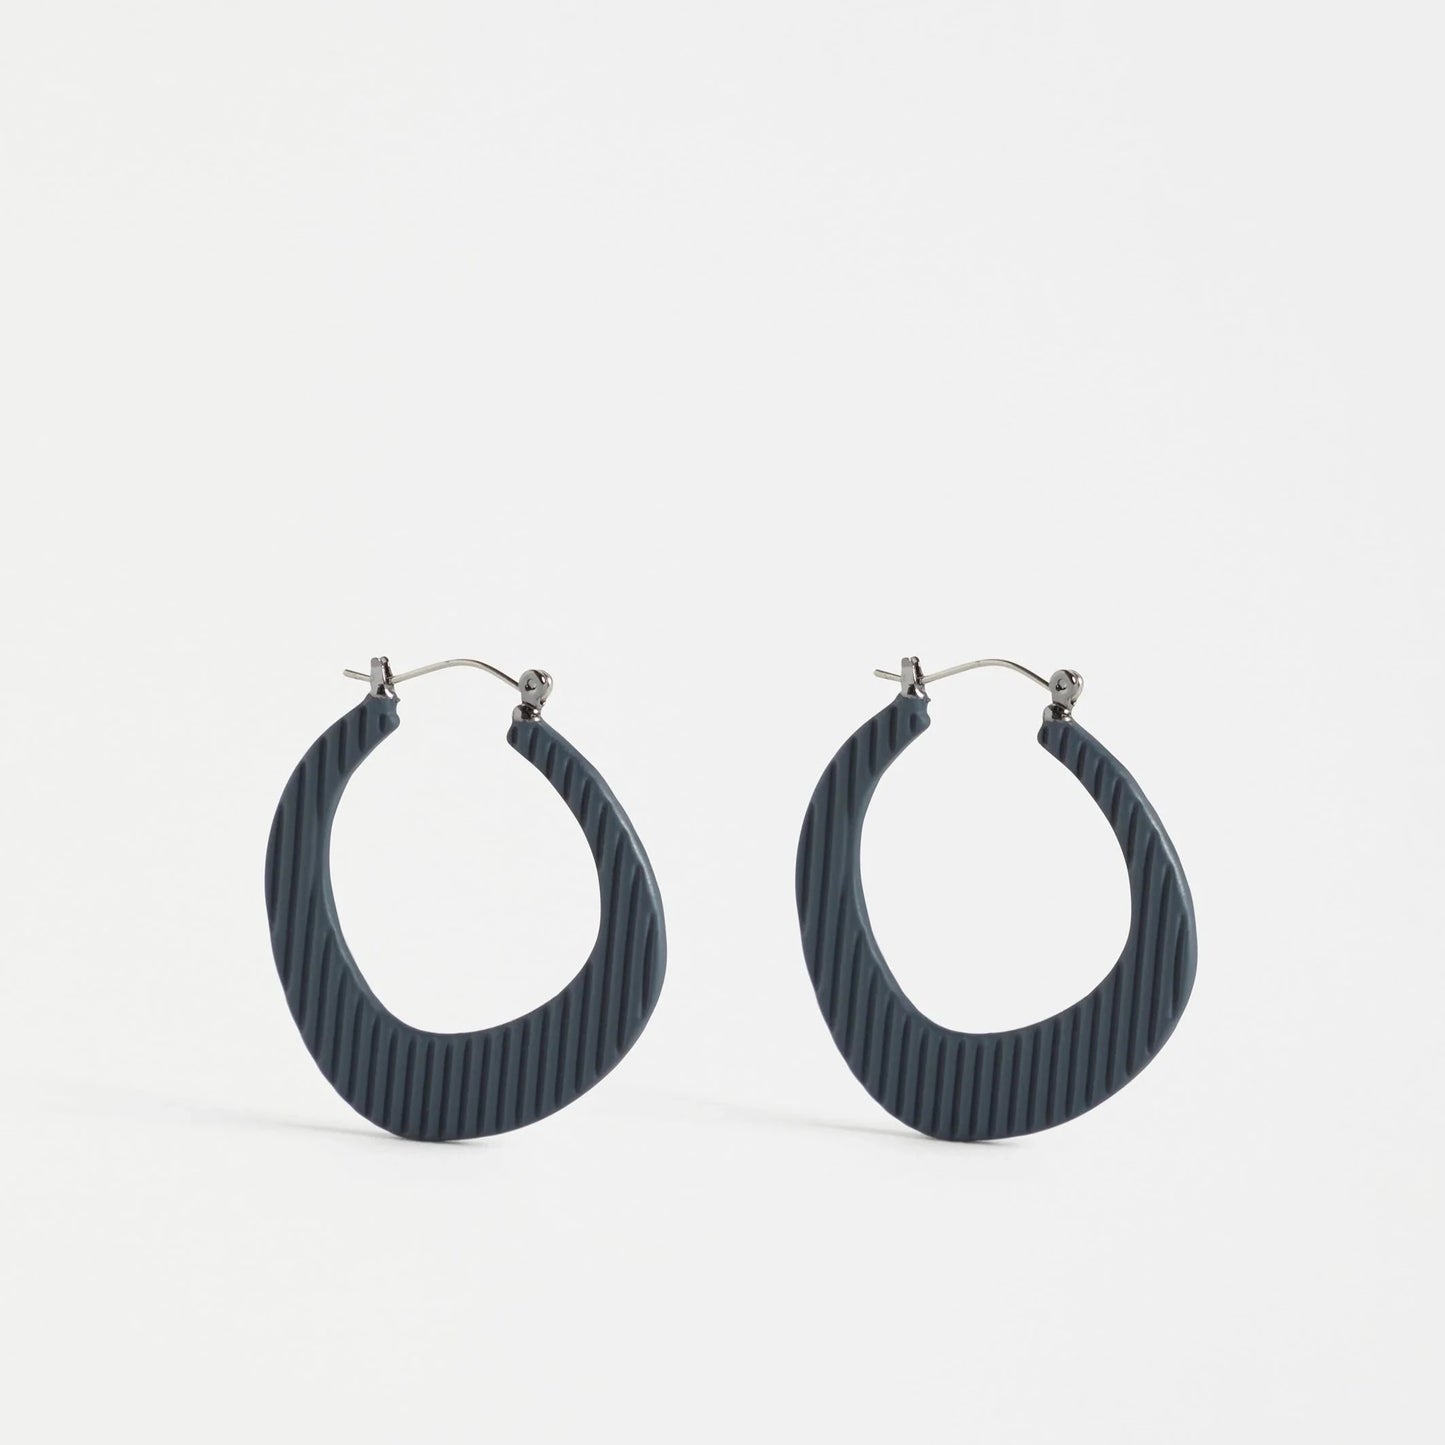 Perda Hoop Earring - in Dark Olive or Carbon